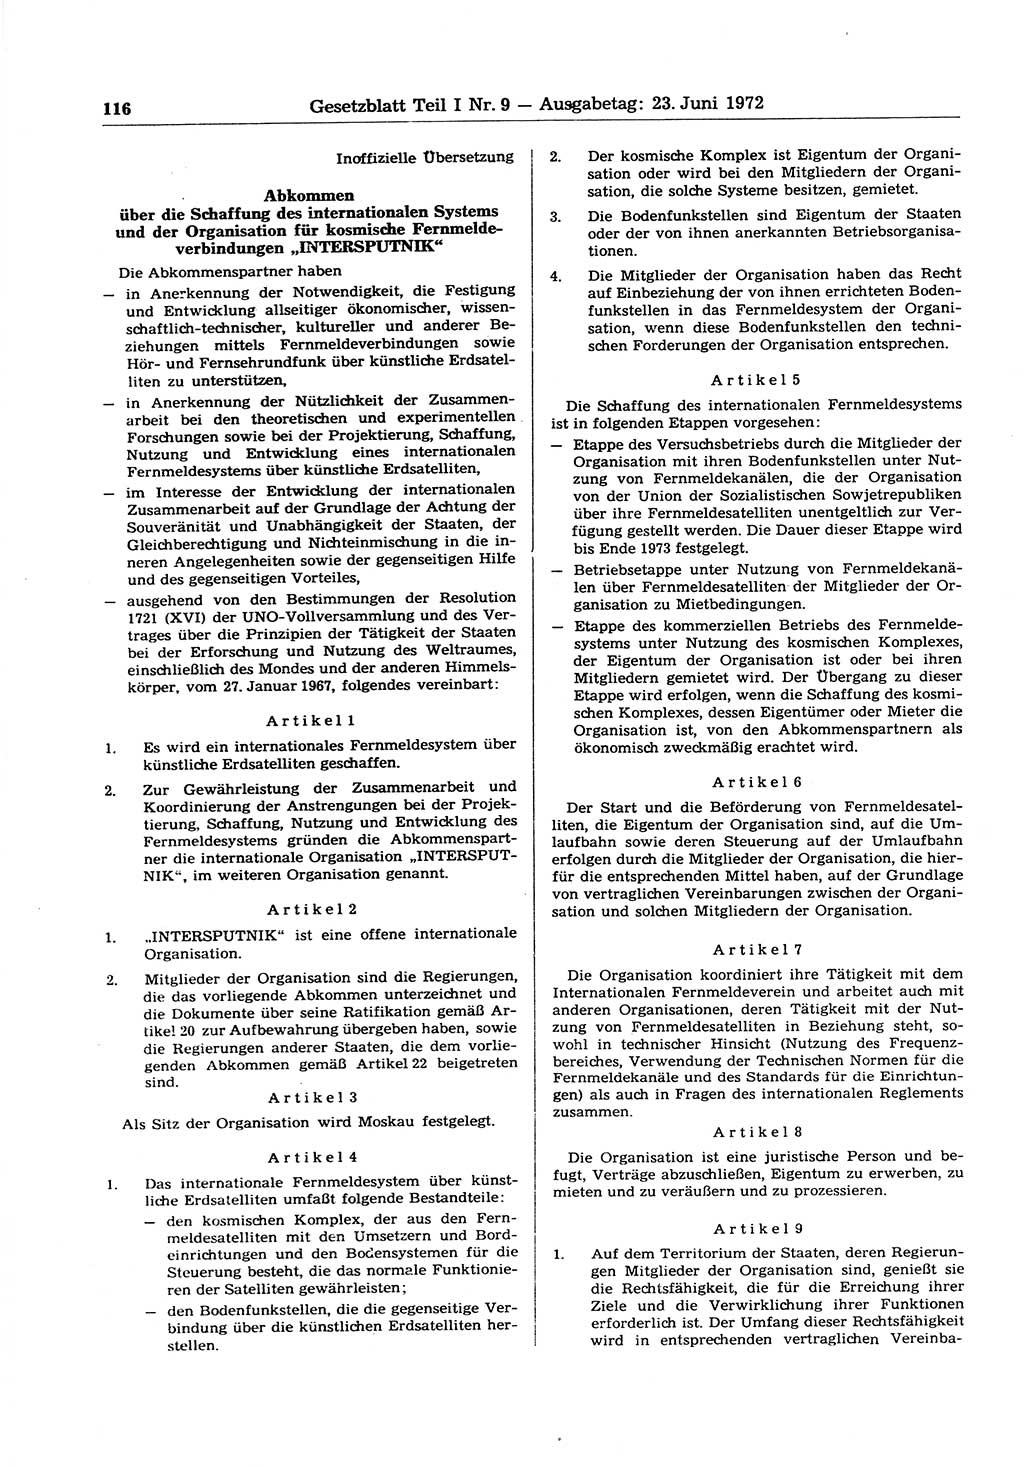 Gesetzblatt (GBl.) der Deutschen Demokratischen Republik (DDR) Teil Ⅰ 1972, Seite 116 (GBl. DDR Ⅰ 1972, S. 116)